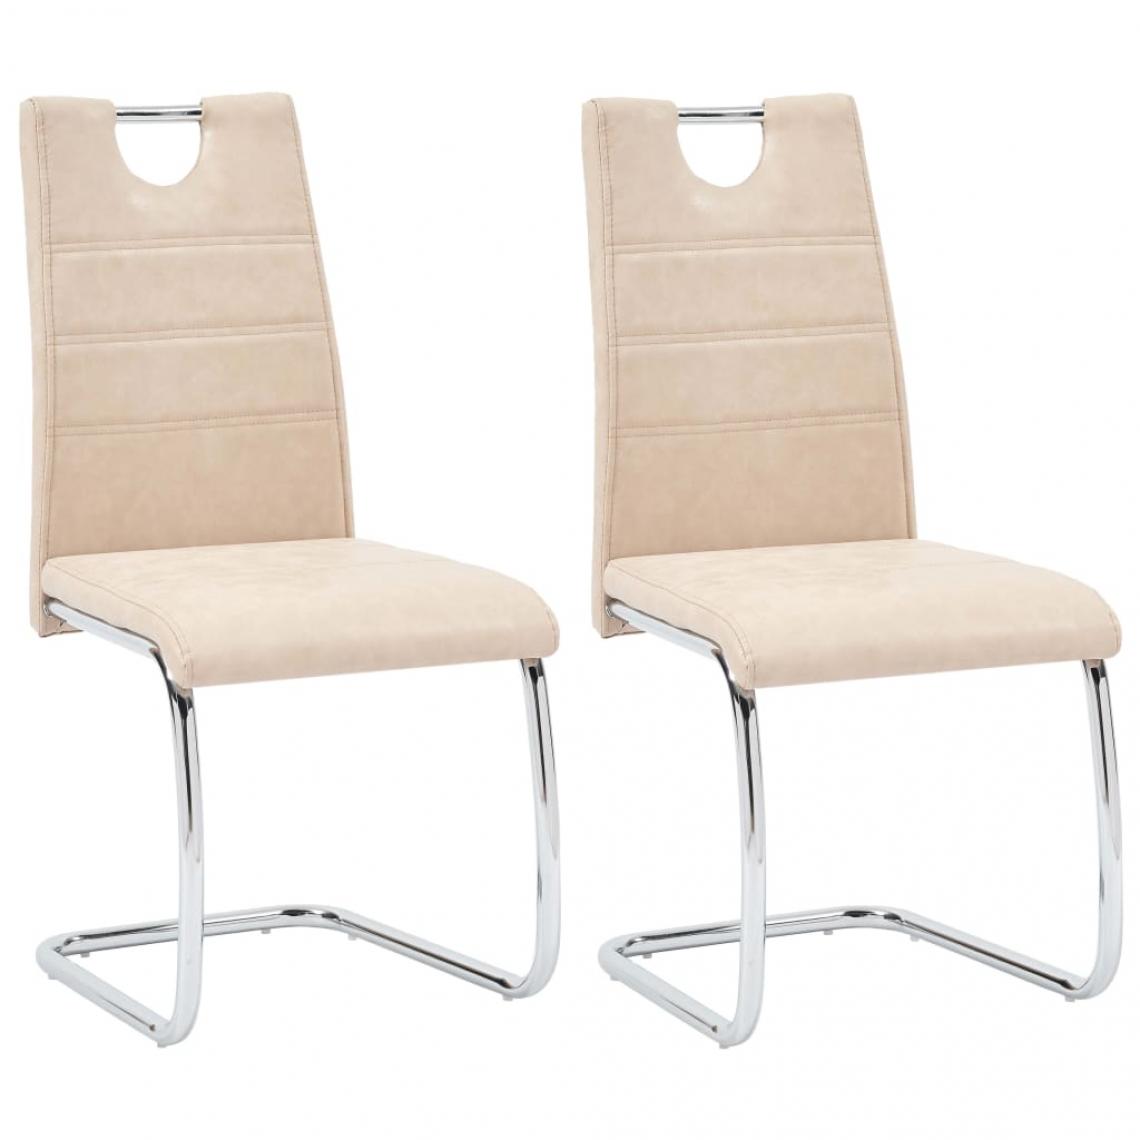 Decoshop26 - Lot de 2 chaises de salle à manger cuisine design moderne similicuir crème CDS020419 - Chaises